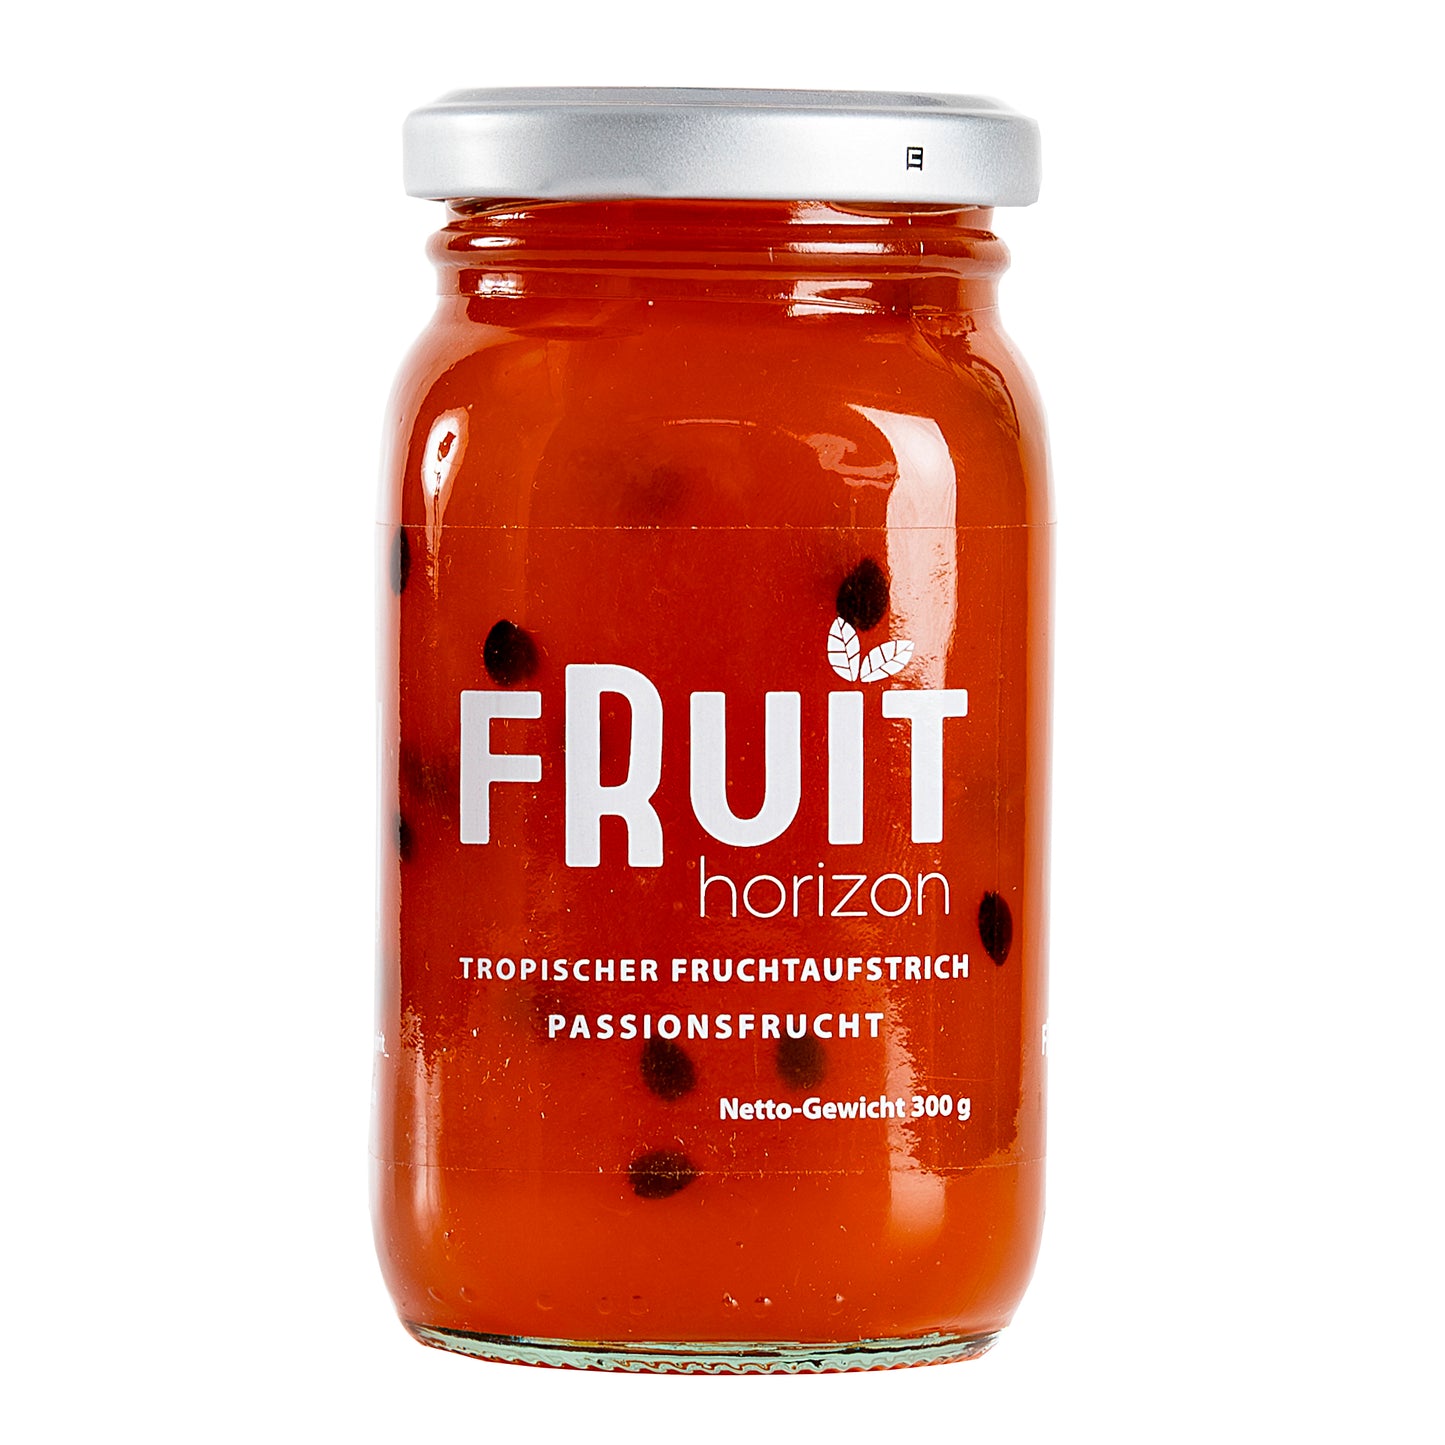 Fruit Horizon - Tropical Fruit Spread - Passion Fruit 300g